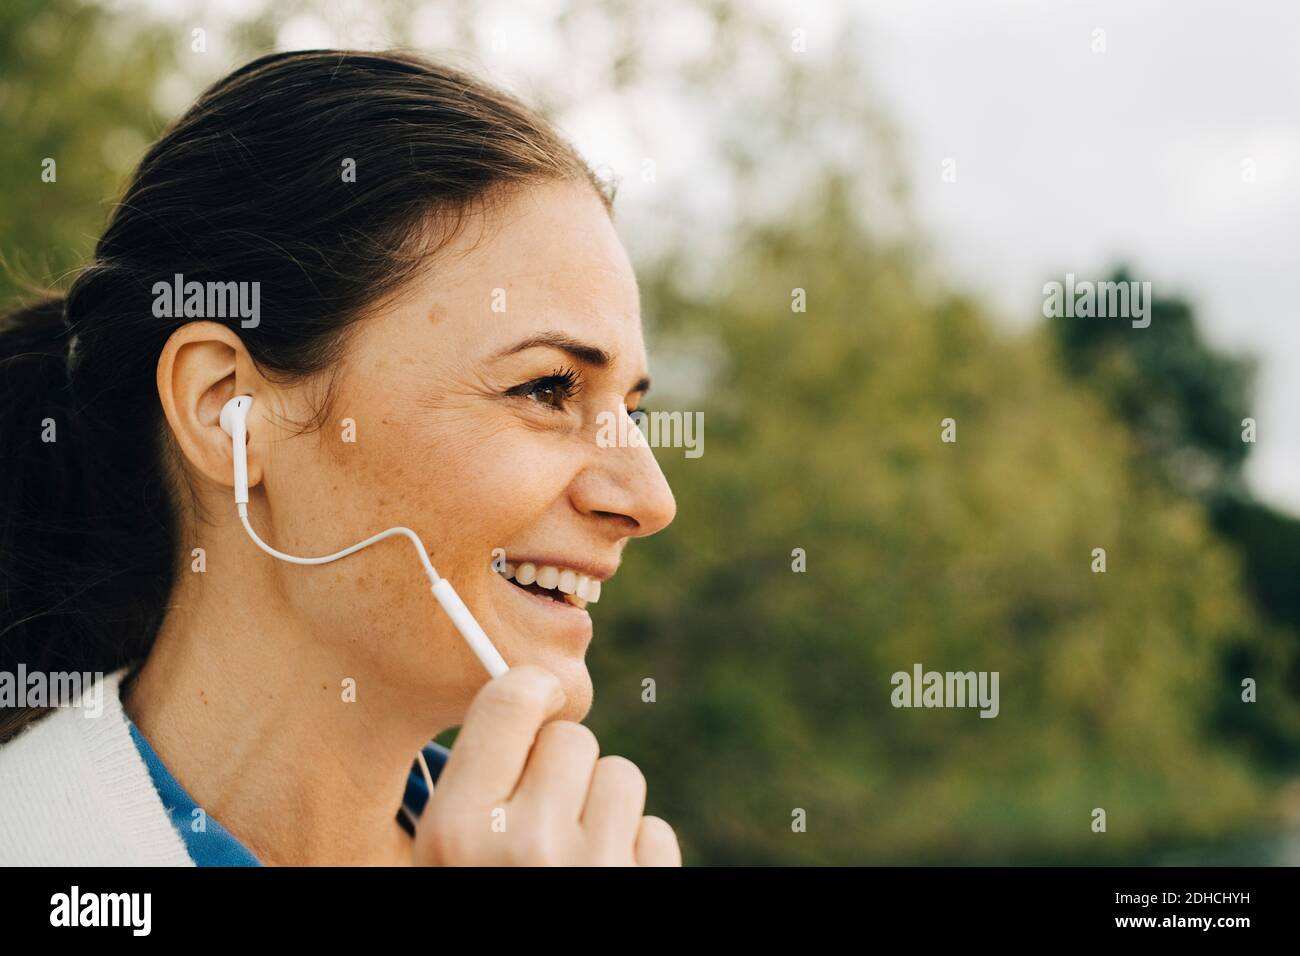 Gros plan d'une femme souriante qui parle dans un casque tout en regardant loin Banque D'Images